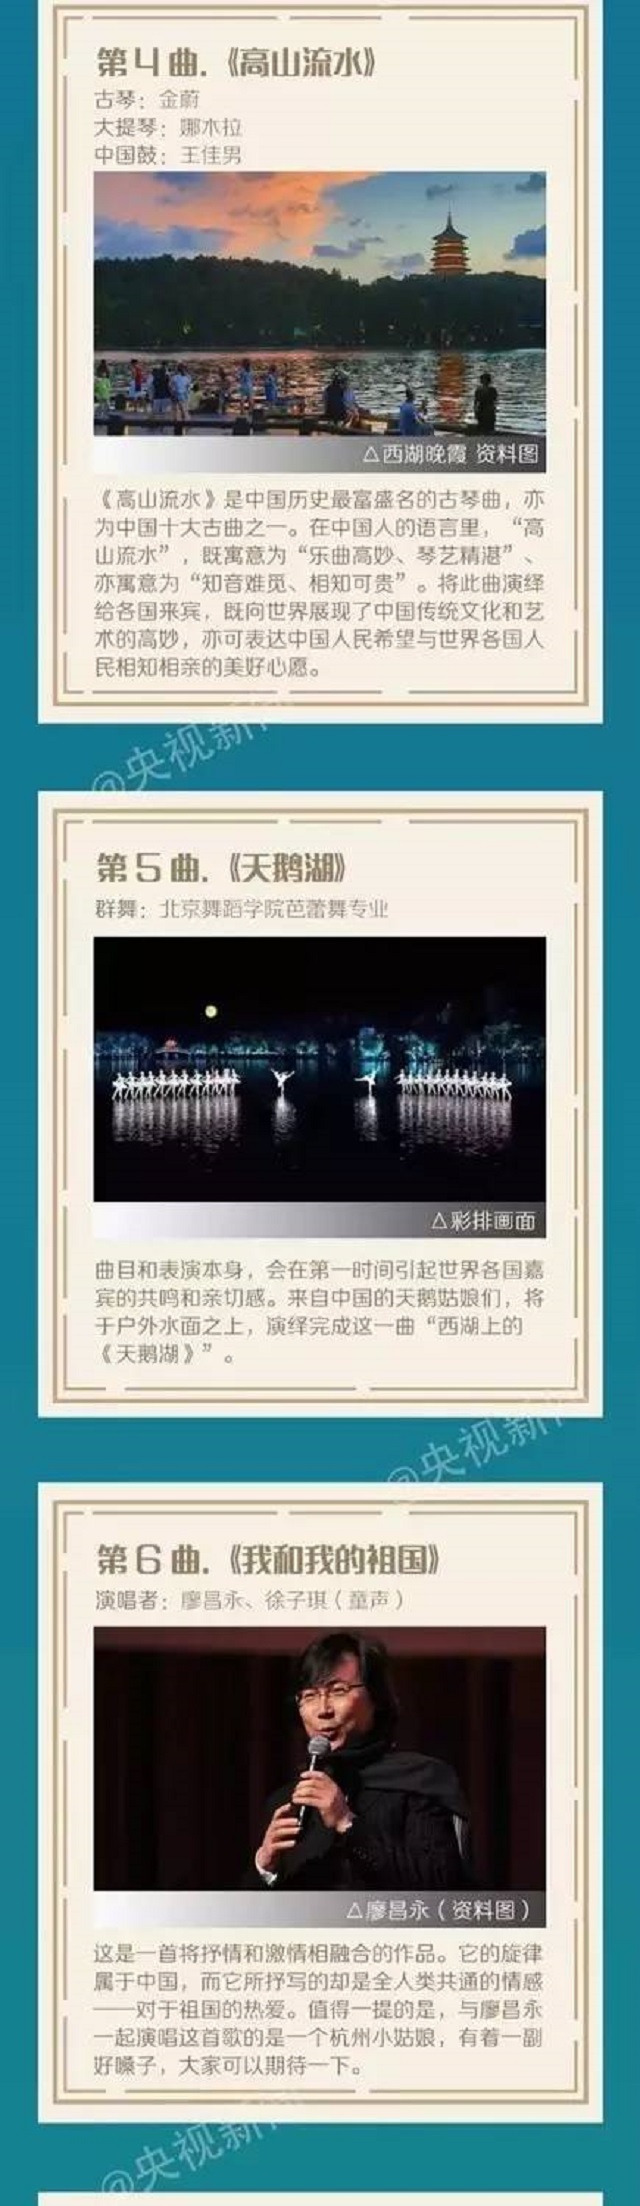 G20峰会文艺演出将在杭州西湖震撼上演 节目单抢先看